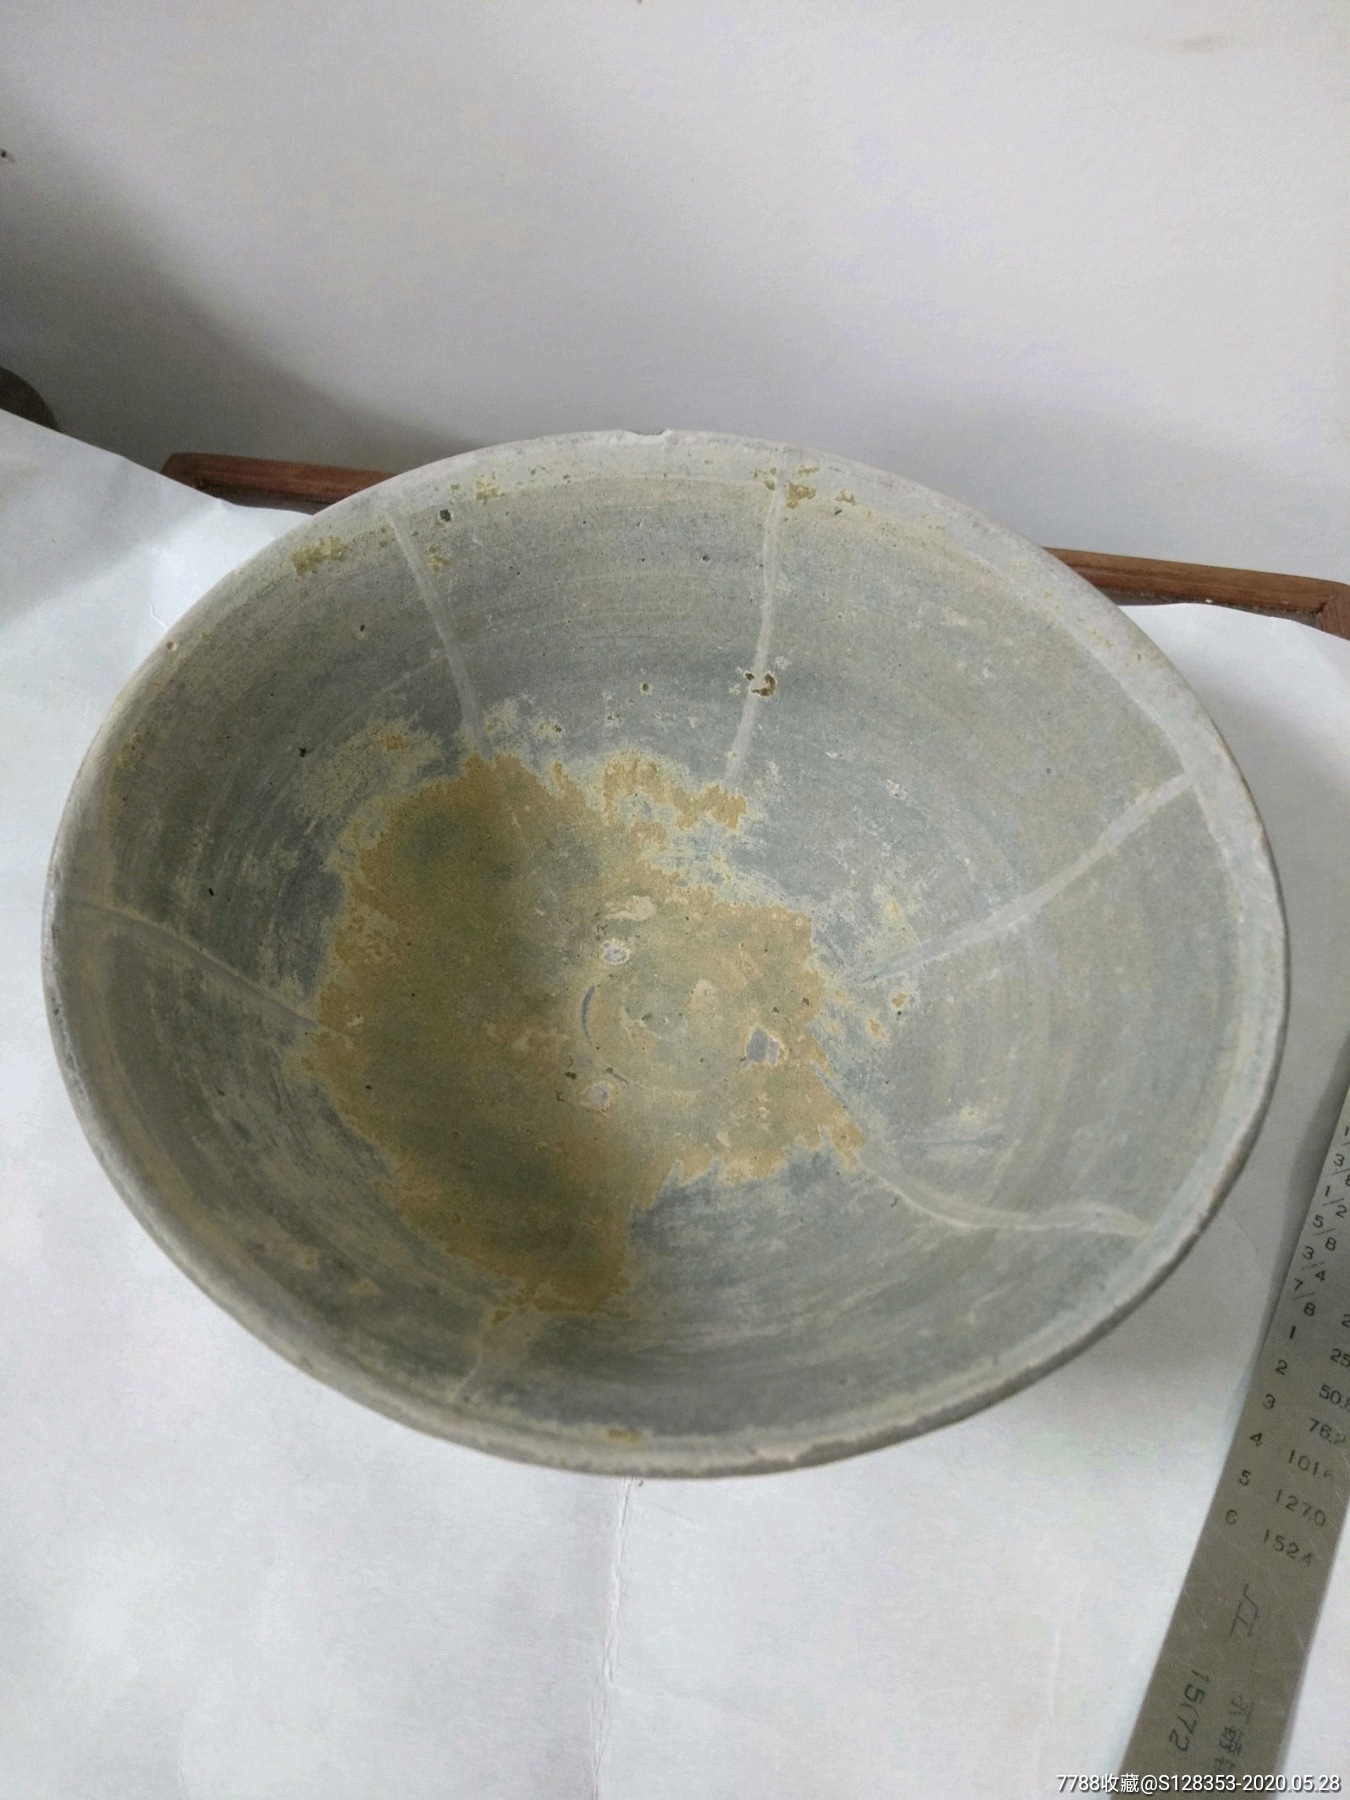 宋代稀见衡洲窑瓷碗摆件出土时釉已掉落可上拍懂货来包老包到宋代尺寸